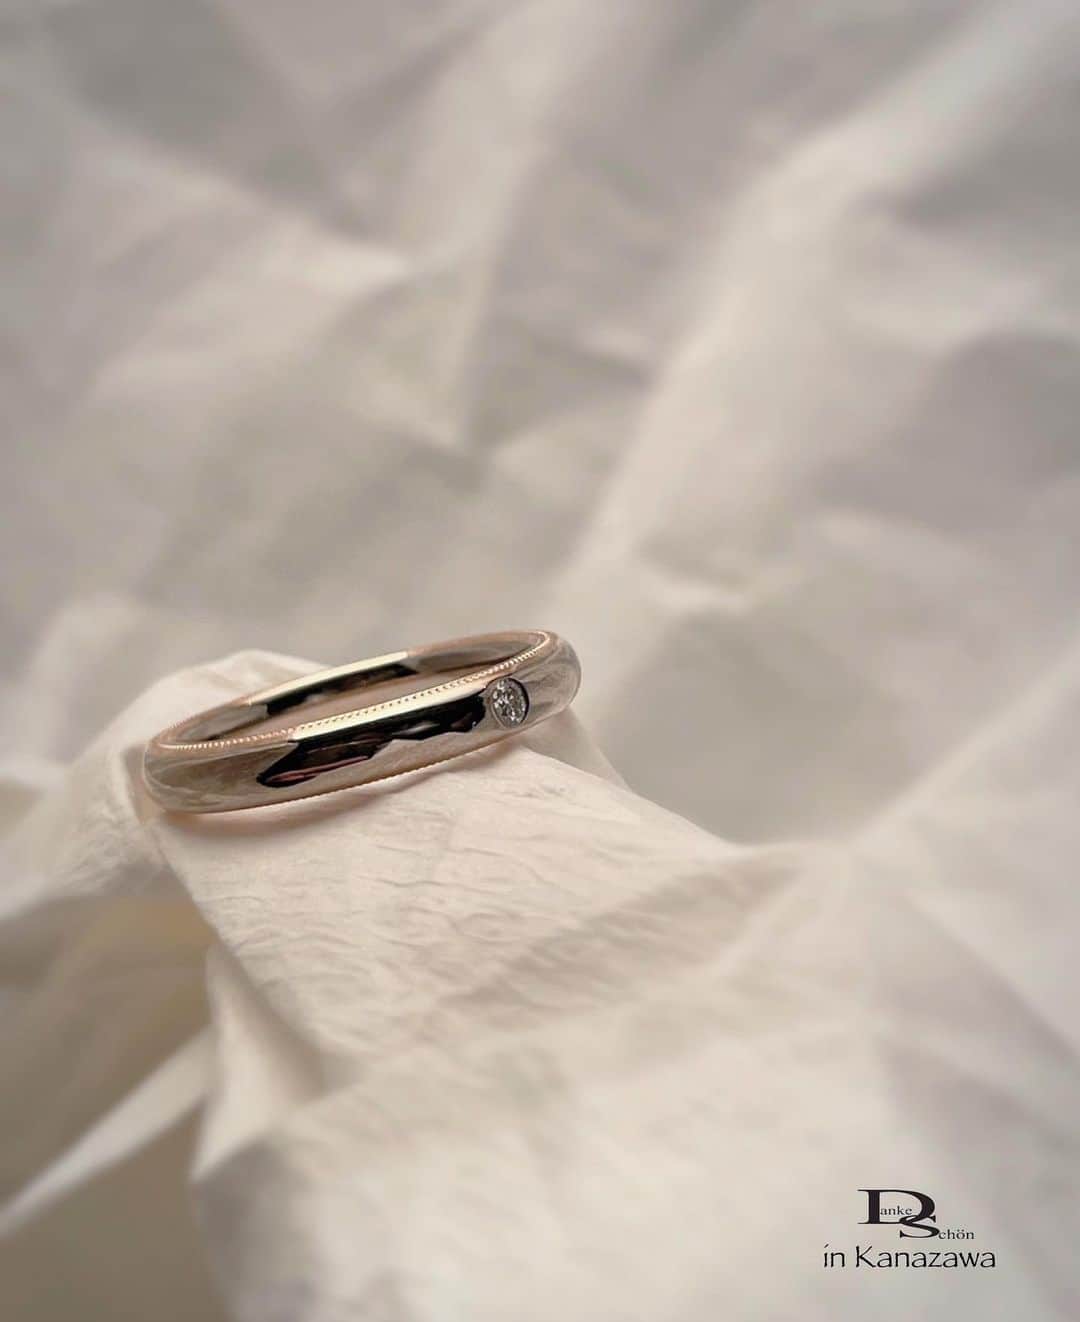 Danke schön ダンケ 金沢 結婚指輪 鍛造さんのインスタグラム写真 - (Danke schön ダンケ 金沢 結婚指輪 鍛造Instagram)「・ ・ ハイ🙌🏻 今日のバウアーさんは これにします。 ・ ・ 指輪自体は2色3層の 接合モデル ・ ・ 指輪の側面に ミル打ち加工を施し ・ ・ 指輪を正面から見ているだけでは 至ってふ・つ・う ・ ・ 指輪をはめようと手に取った時に 始めて気付く ・ ・ こんな｢  側面 」にミル打ちが 隠れていたとは…と良く言われます😆 ・ ・ 勿論、指が動く度に 手が動く度に ・ ・ 繊細なミル打ちの ちゅぶちゅぶ が キラキラします！ ・ ・ と… ツラツラ書いてますが ・ ・ 皆さん🙌🏻 気付いてますか？ ・ ・ ｢ミル打ちデザイン」って たくさん指輪のデザインとして 用いられてはいますが ・ ・ 良く目にするのは ｢単色地金」が多くないですか？ ・ ・ 接合した地金(コンビモデル)に対して ミル打ちって…案外少ない…と思いませんか？ ・ ・ しかもロー付けしたコンビの地金ではなく 『接合し圧着』地金でのコンビに対してのミル打ち ・ ・ 📌𝐏𝐨𝐢𝐧𝐭 2色3層とは？ 違う地金同士をロー付けではなく 接合し圧着した地金  ※ロー付けとは？（業界用語） 分かりやすく言うなら｢接着」  ミルはミルですが そのミルを施す指輪自体の作りに違いありですよ🤭 ・ ・ ・ ・ ・  【工業系 鍛造削り出し】 🇩🇪クリスチャンバウアー 専門店 ・ ・ ワンランク上をいくノウハウの クリスチャンバウアーの選び方なら 『Danke schön 』 ・ ・ ・ —— 𝐃𝐚𝐧𝐤𝐞——— ▪︎ Instagramプロフィール 🔜 @danke2005  —————————————————————𝐒𝐜𝐡⍥𝐧——— ・ ・ #クリスチャンバウアー金沢 #鍛造指輪 #鍛造リング #結婚指輪 #結婚指輪オーダー #切削加工 #結婚指輪探し #結婚指輪選び #指輪探し #指輪選び #マリッジリング #結婚指輪金沢 #金沢結婚指輪 #セカンドリング #結婚指輪買い替え #地金屋鍛造 #ブライダルリング #結婚記念日 #ベビーリング #ドイツリング #クリスチャンバウアーダンケ #クリスチャンバウアーdanke #ミルグレイン #ミル打ち   ------------------------------------------✈︎ ---------  鍛造削り出し 🇩🇪クリスチャンバウアー 専門店 『𝐃𝐚𝐧𝐤𝐞 𝐬𝐜𝐡⍥𝐧』 ・ • 営業時間 am11:00〜pm9:00 • 定休日 : 木曜日 • 駐車場 : 店舗前OK • ご予約 : 優先 ・ ・ ——𝐃𝐚𝐧𝐤𝐞——————————————— ▪︎トップページ 🔜 @danke2005 ———————————————————-𝐒𝐜𝐡⍥𝐧————」9月20日 20時21分 - danke2005